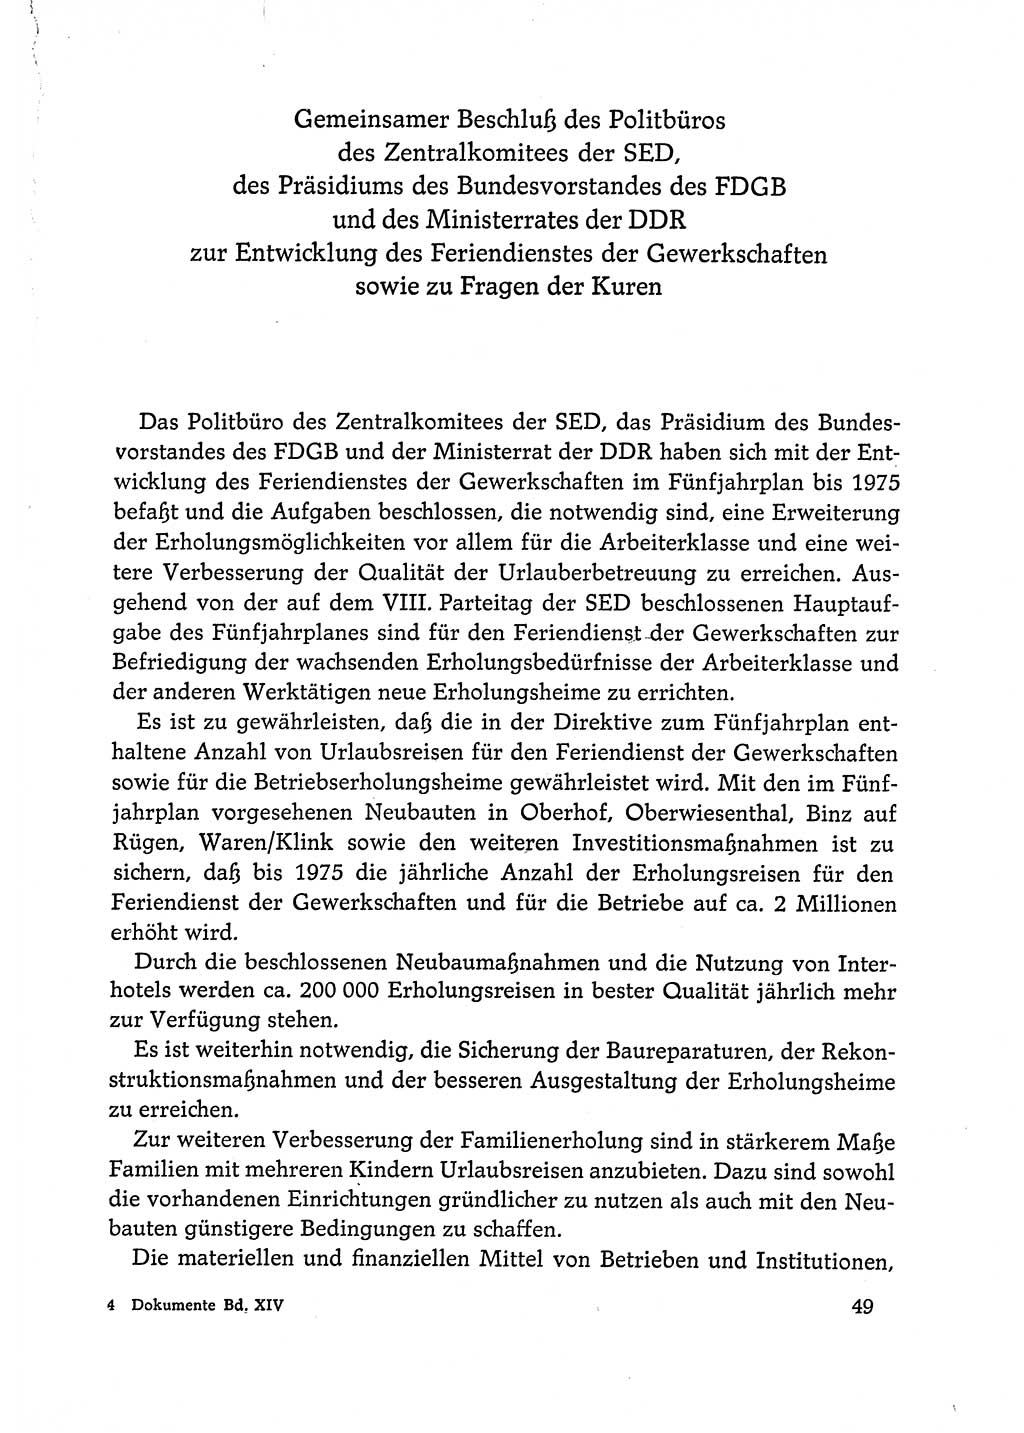 Dokumente der Sozialistischen Einheitspartei Deutschlands (SED) [Deutsche Demokratische Republik (DDR)] 1972-1973, Seite 49 (Dok. SED DDR 1972-1973, S. 49)